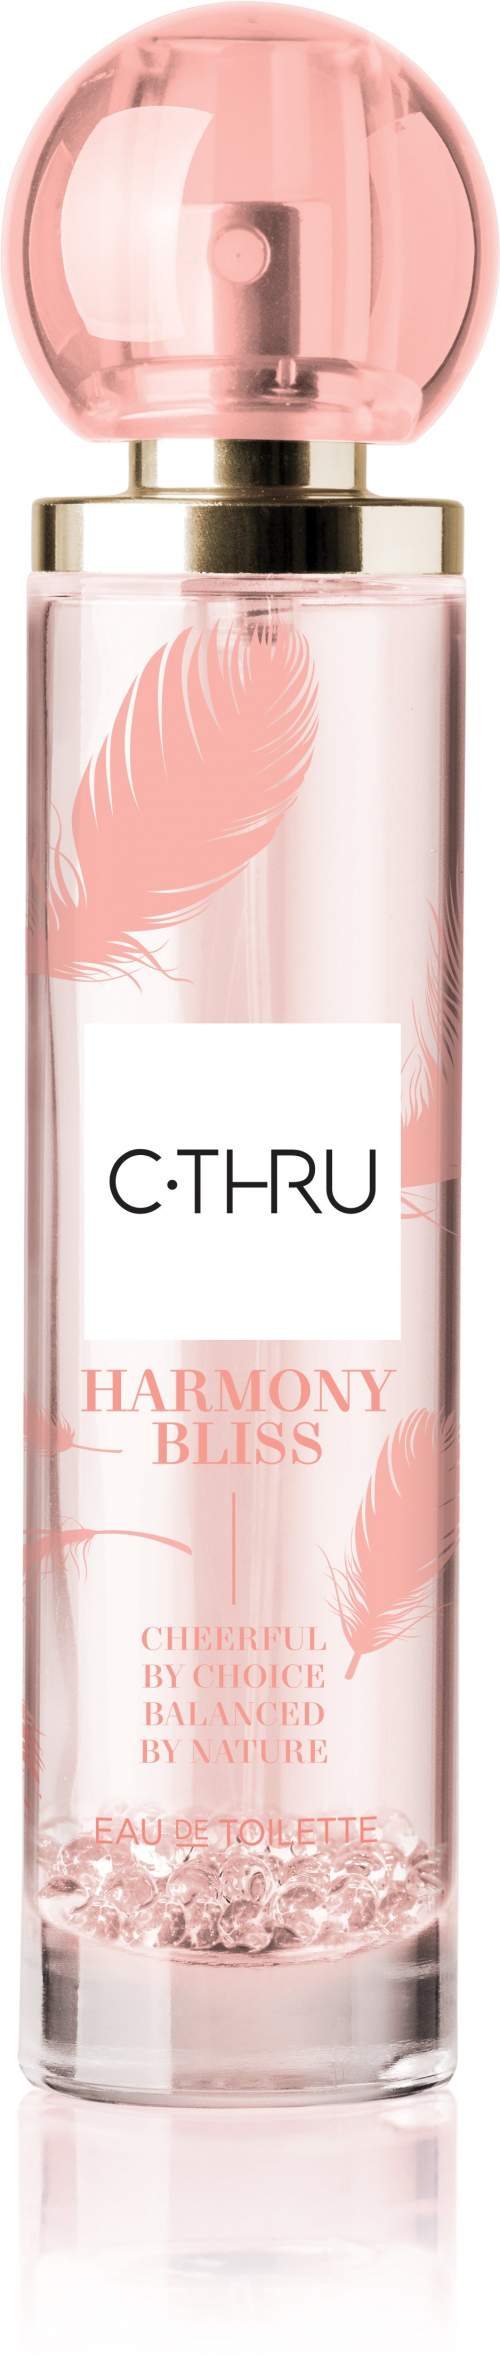 C-THRU Harmony Bliss  EDT 50 ml